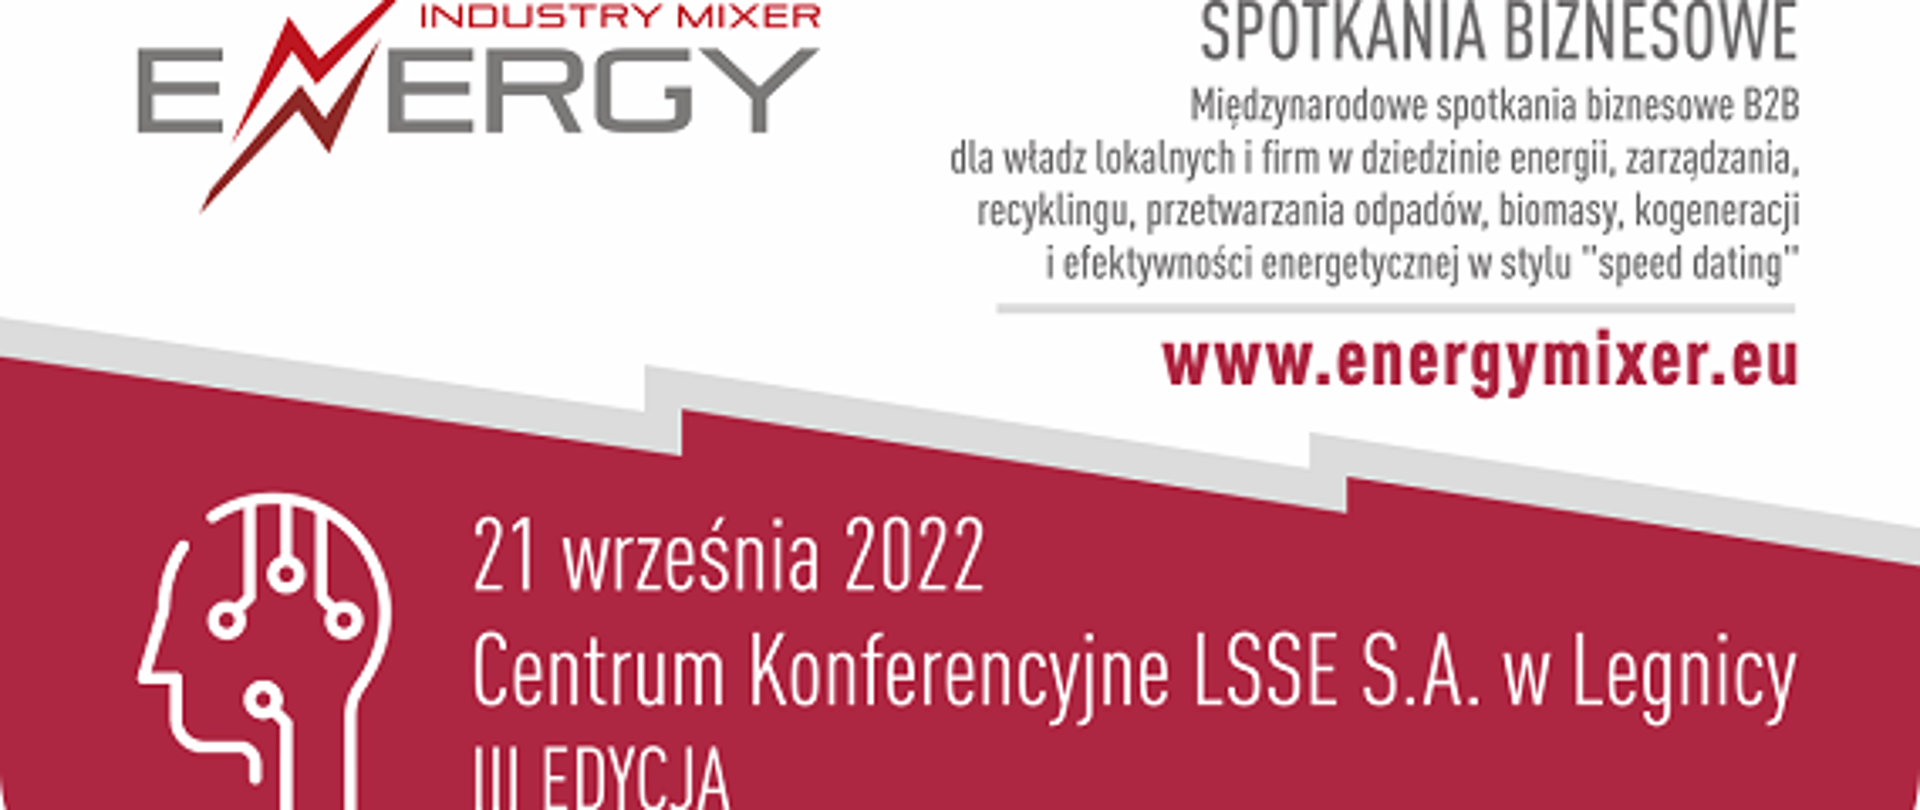 Energy Industry Mixer III